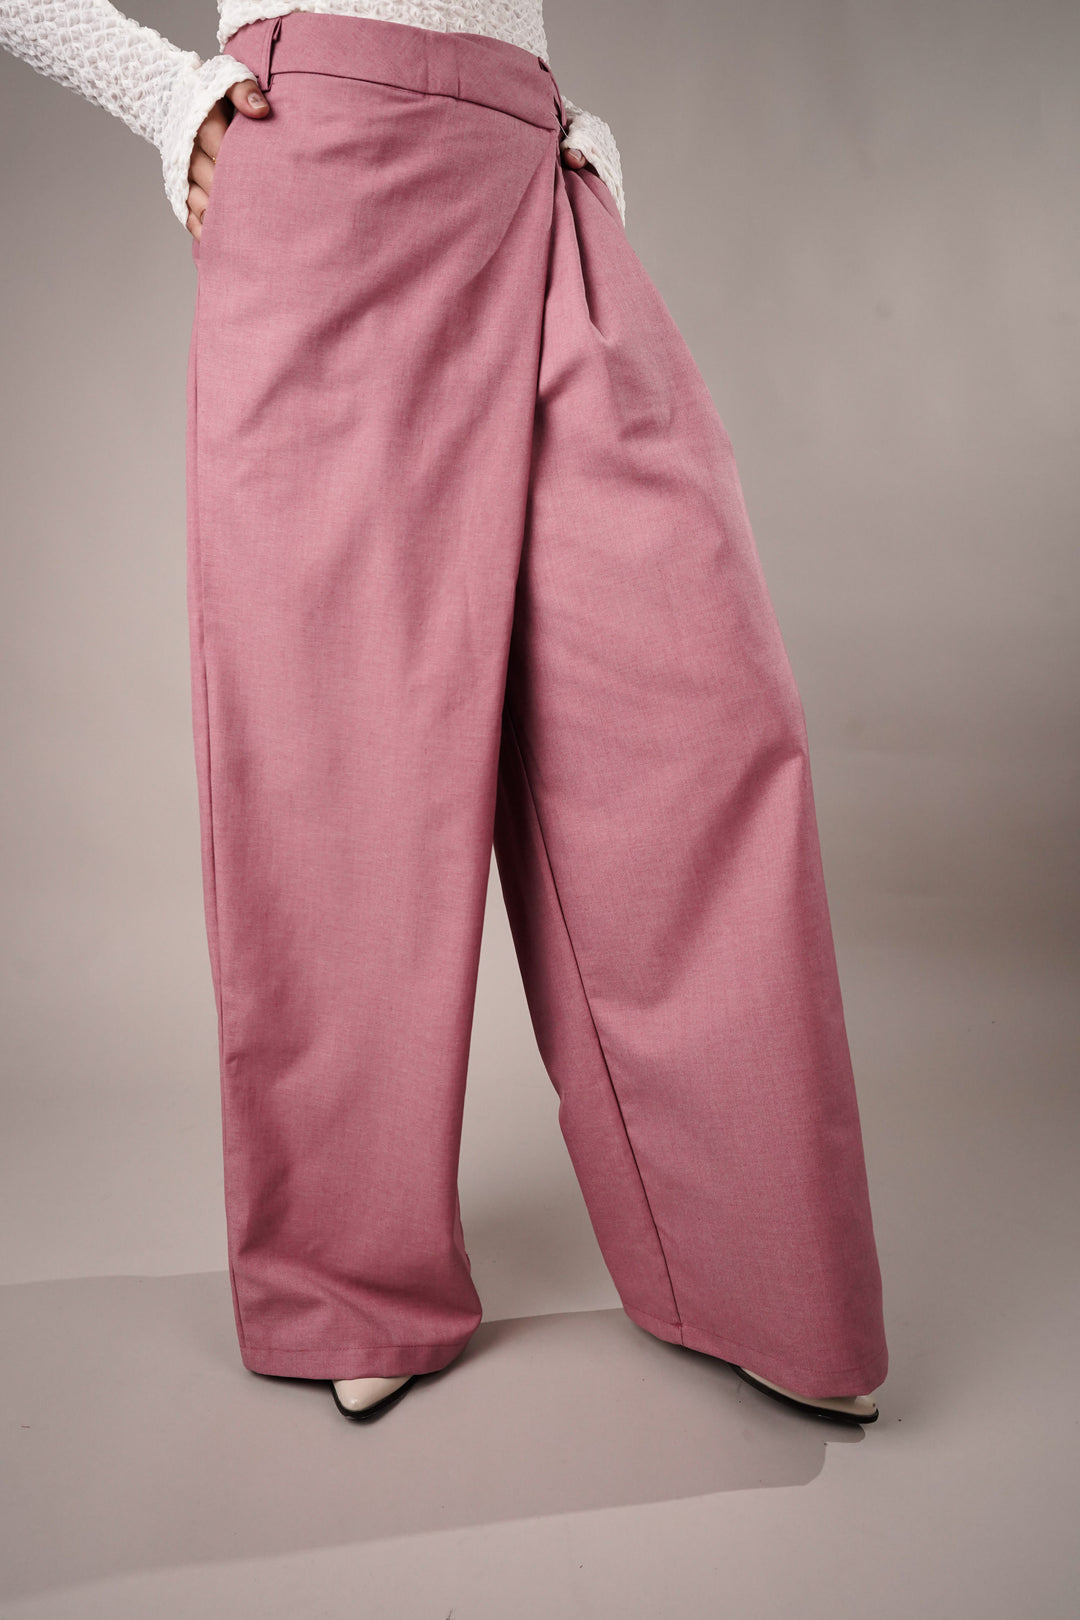 Wrapped Pink Asymmetrical Pants